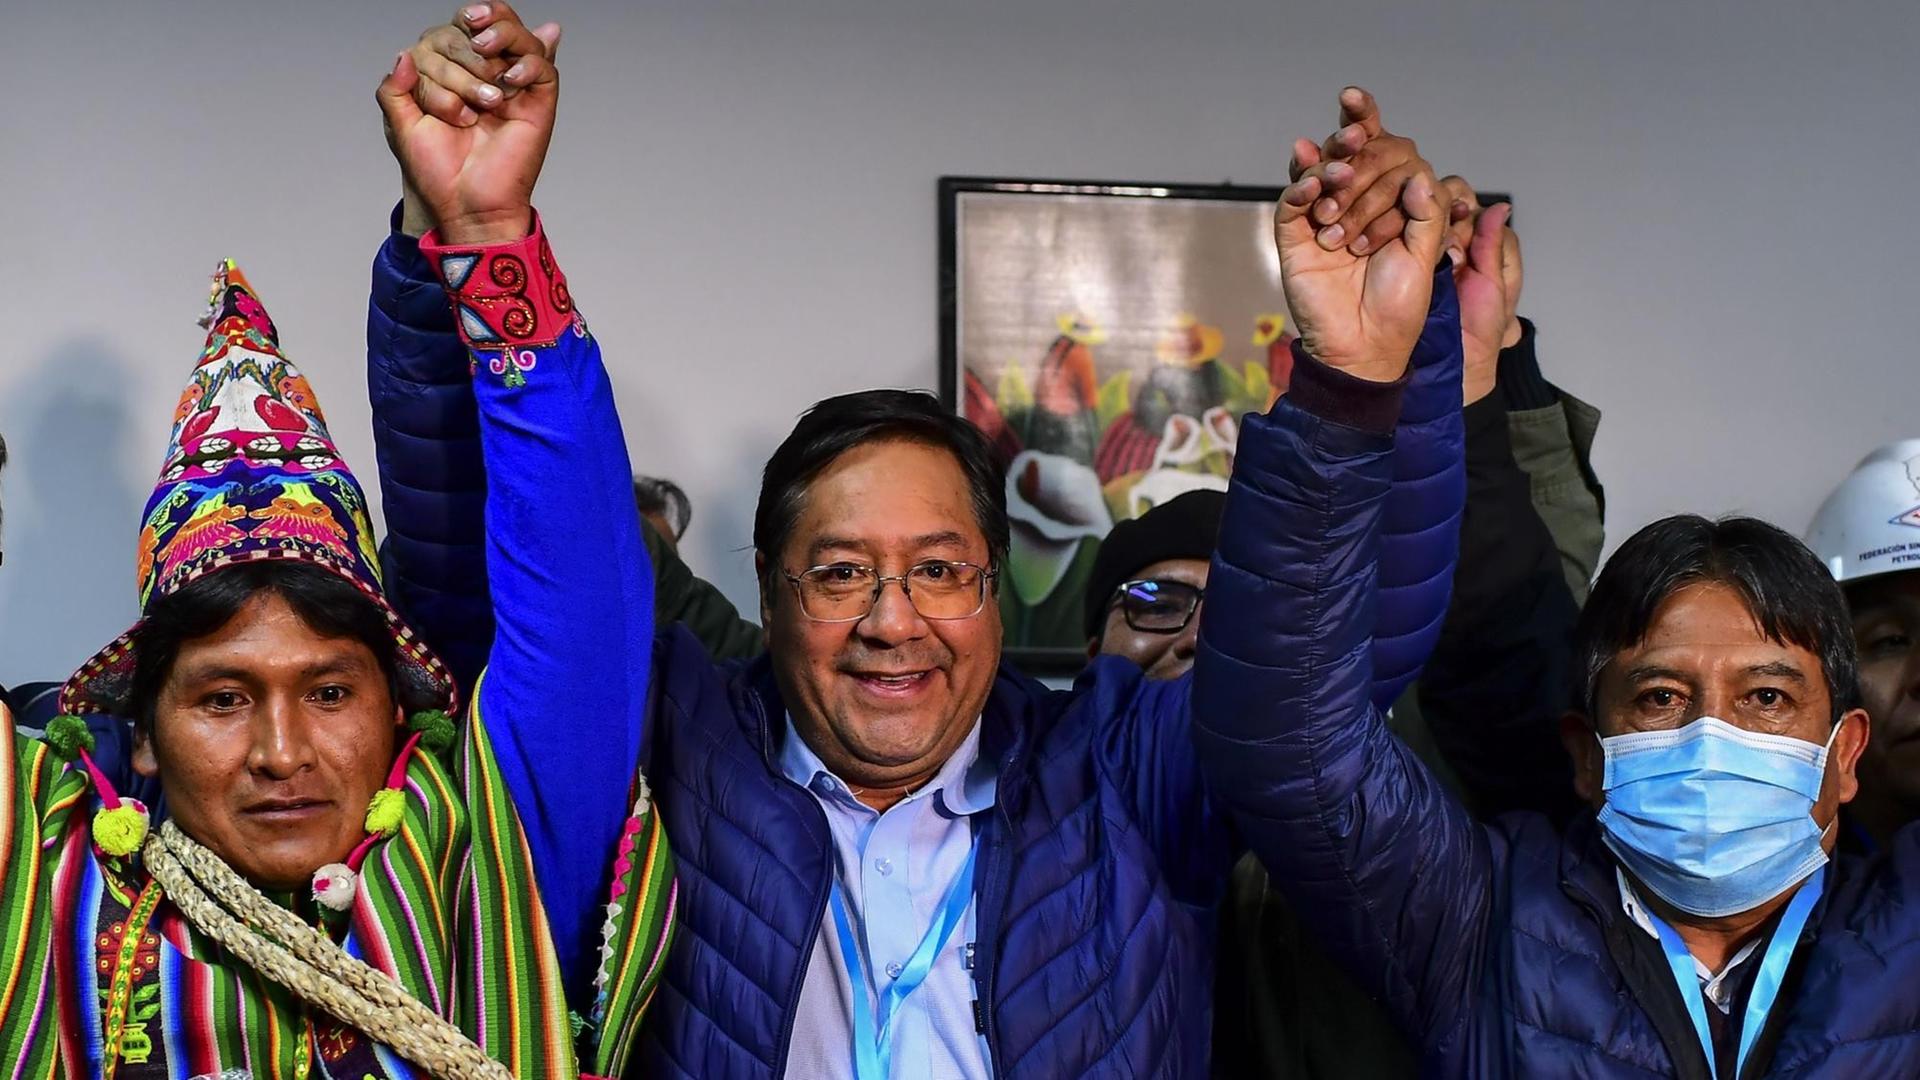 Der neue Präsident von Bolivien Luis Arce hebt die Arme und jubelt.